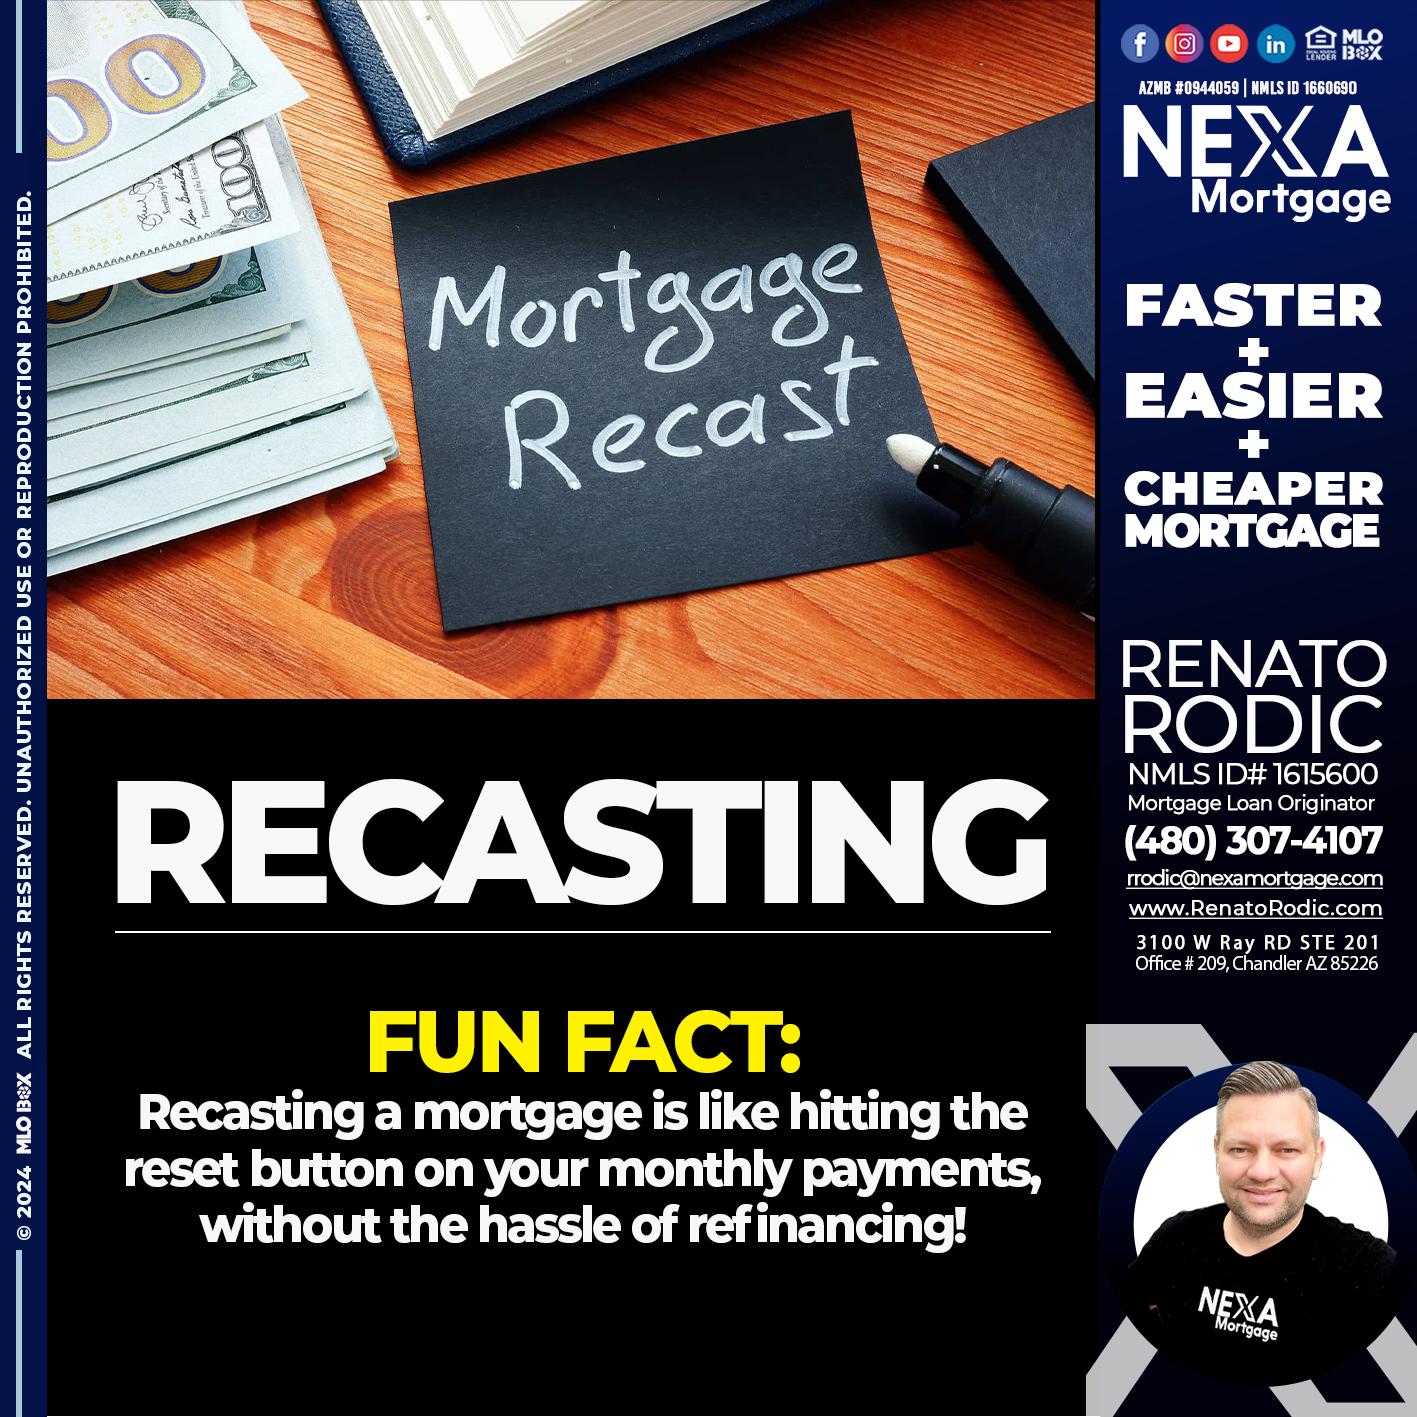 RECASTING - Renato Rodic -Mortgage Loan Originator